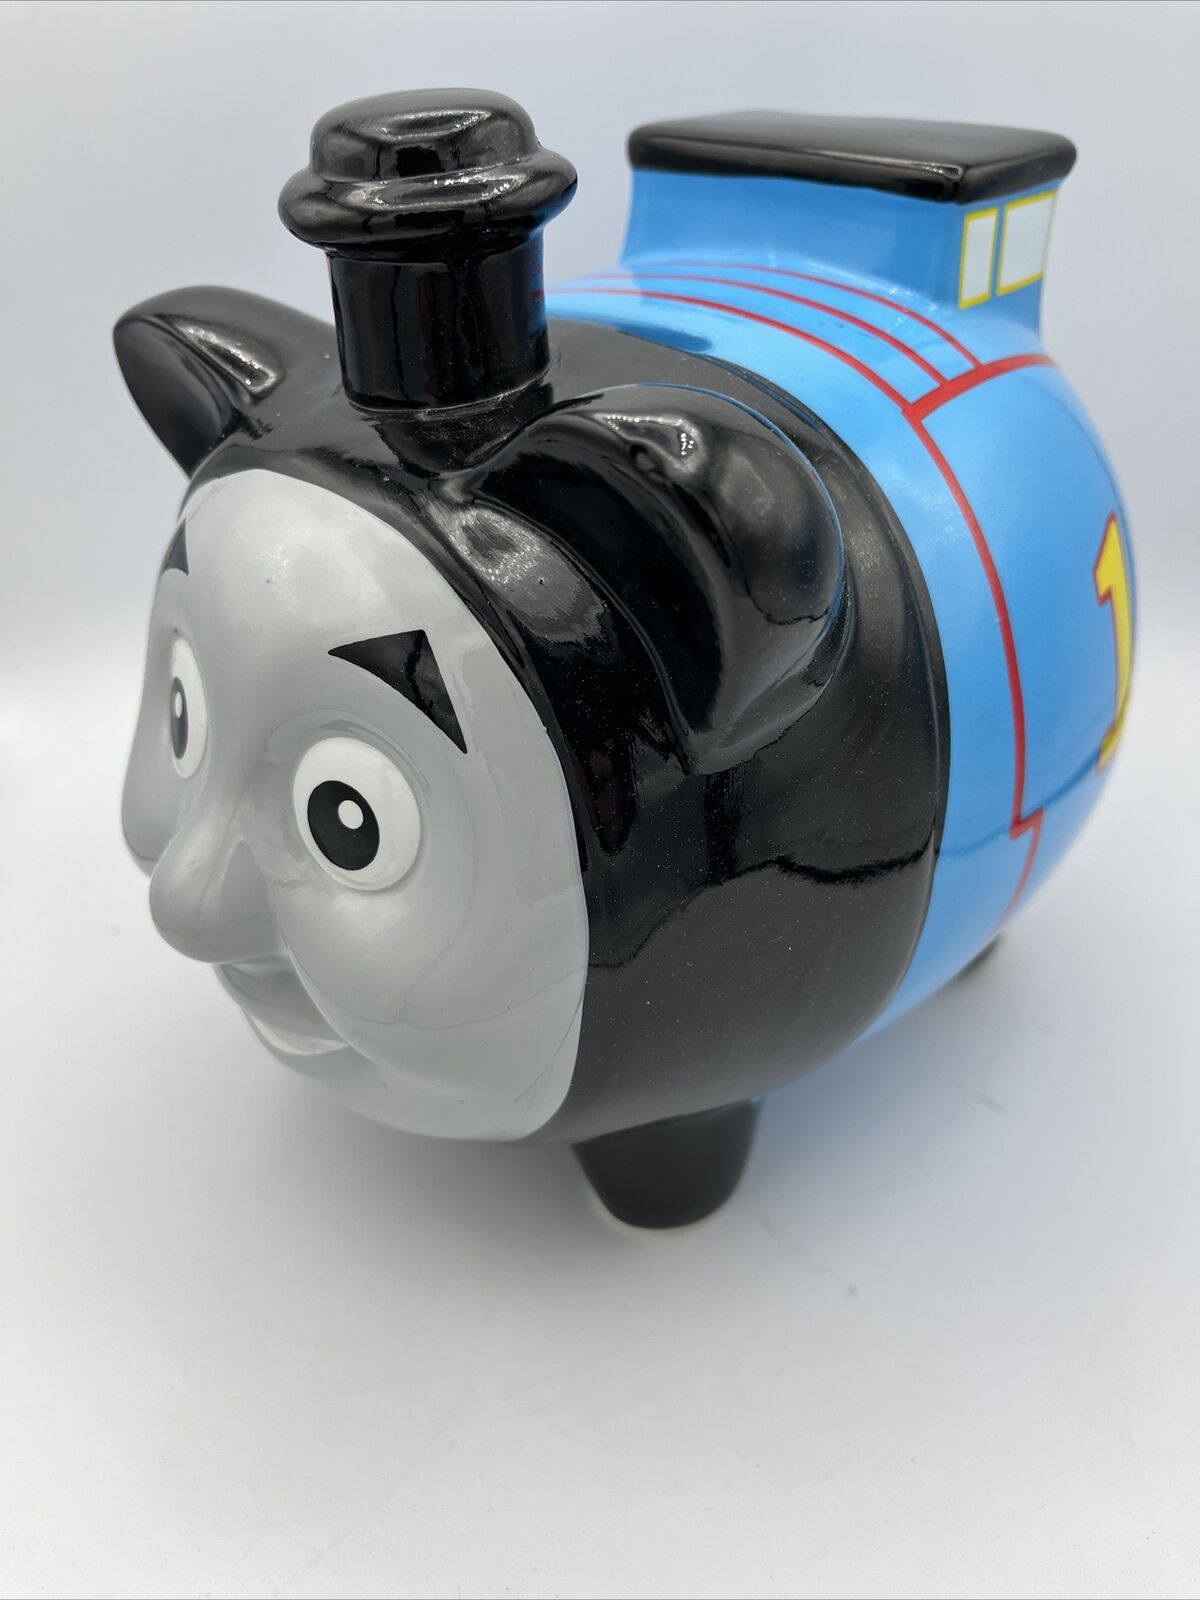 Thomas the Train Engine Ceramic Piggy Bank 2015